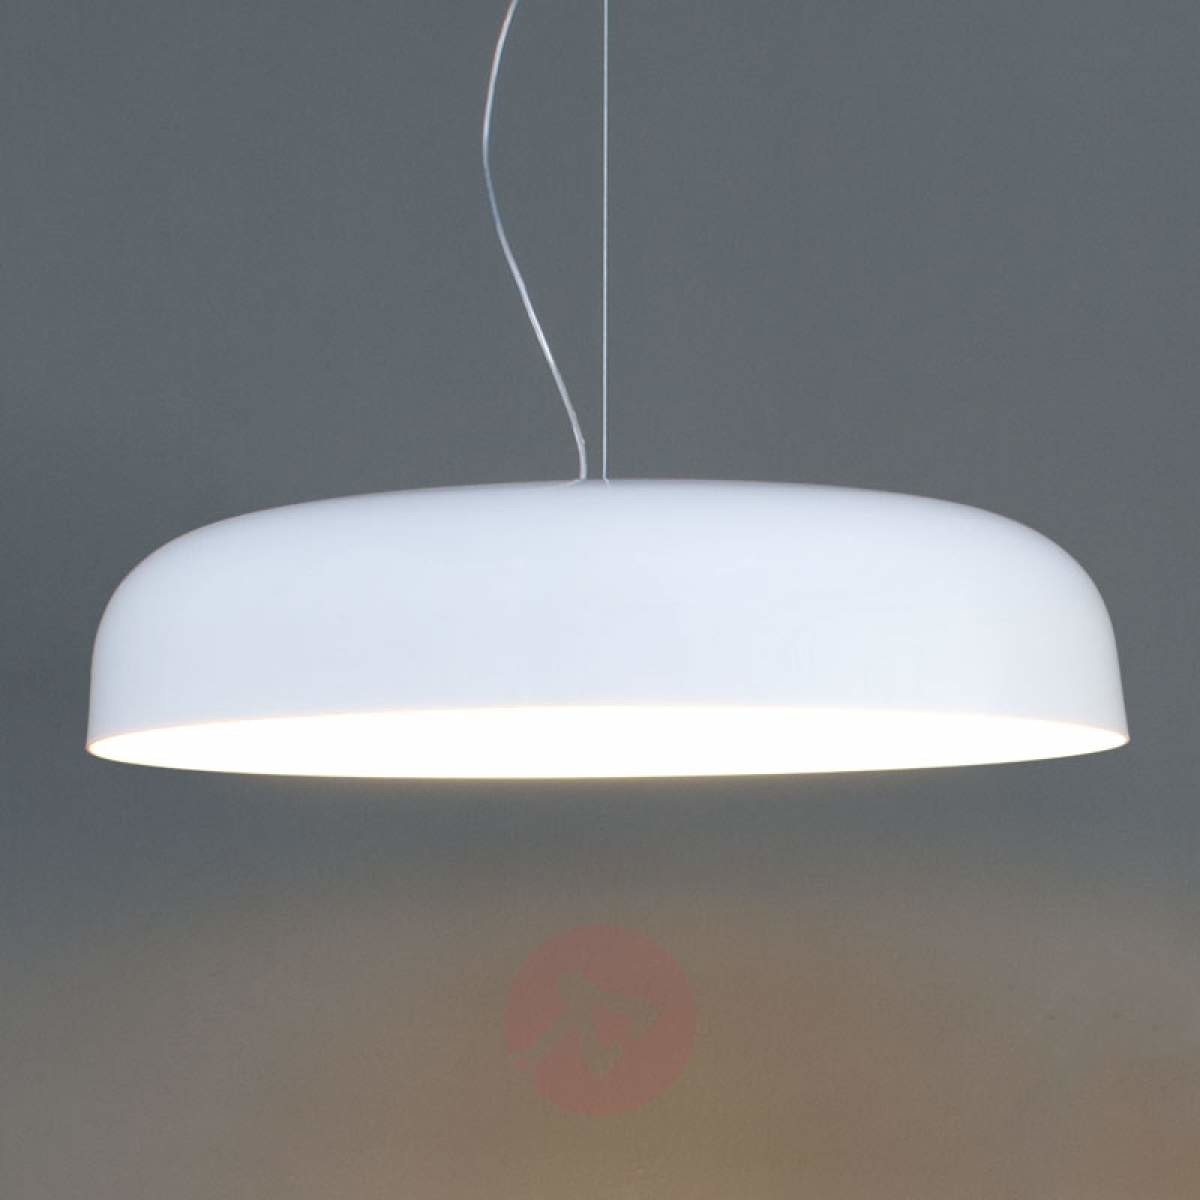 Szykowna lampa wisząca CANOPY, 90 cm, biała